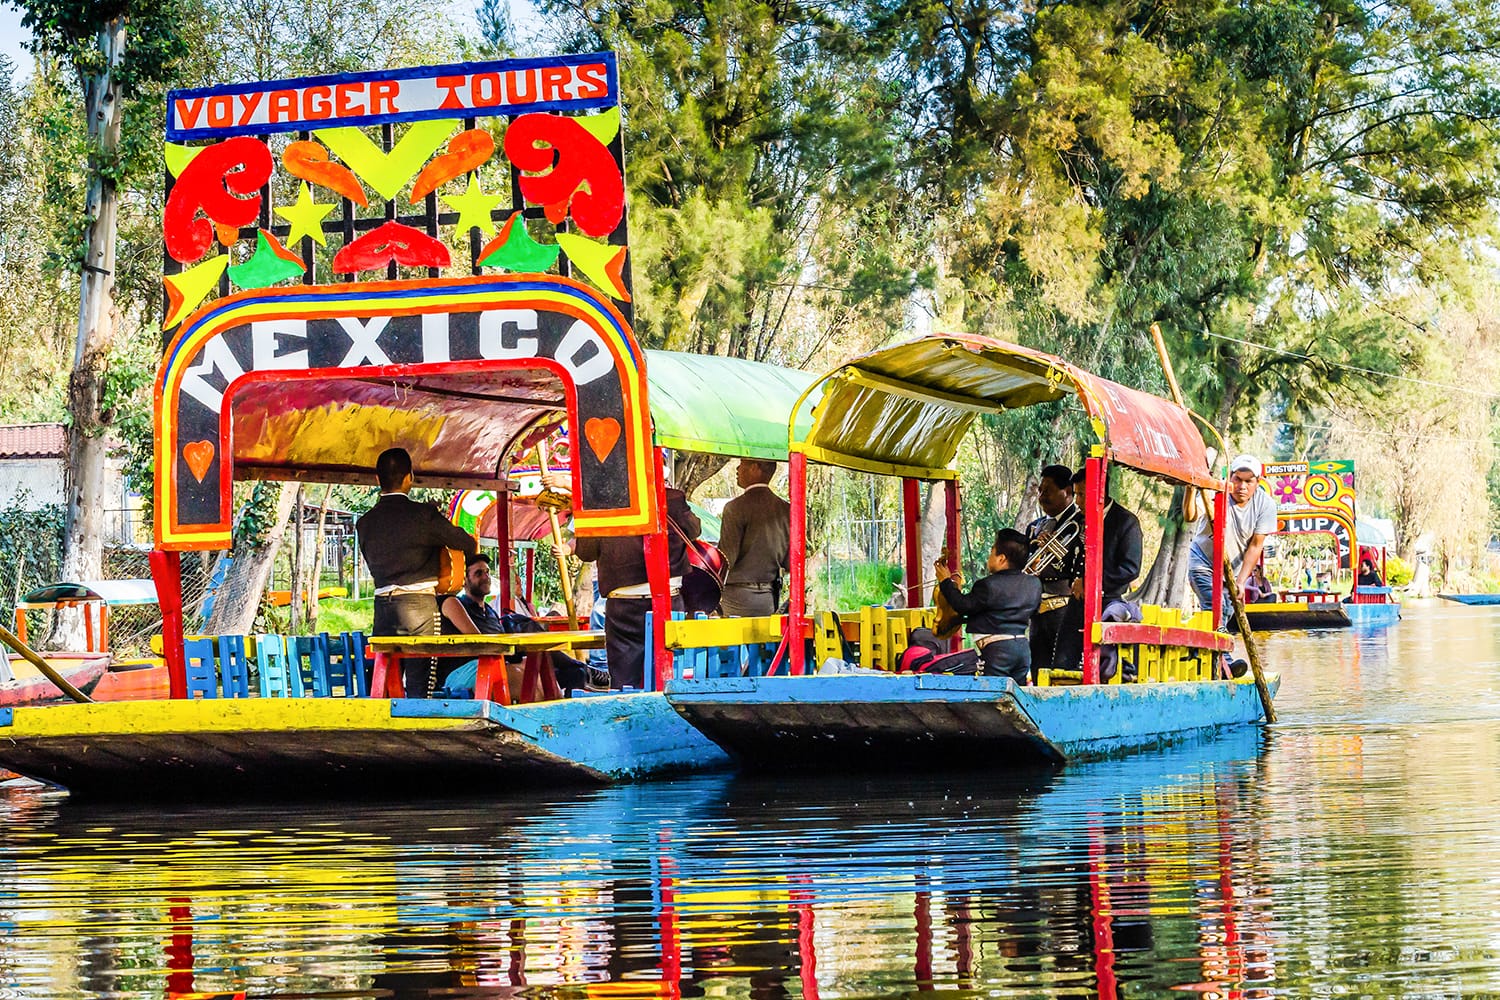 Embarcaciones tradicionales "trajineras" en Xochimilco Ciudad de México